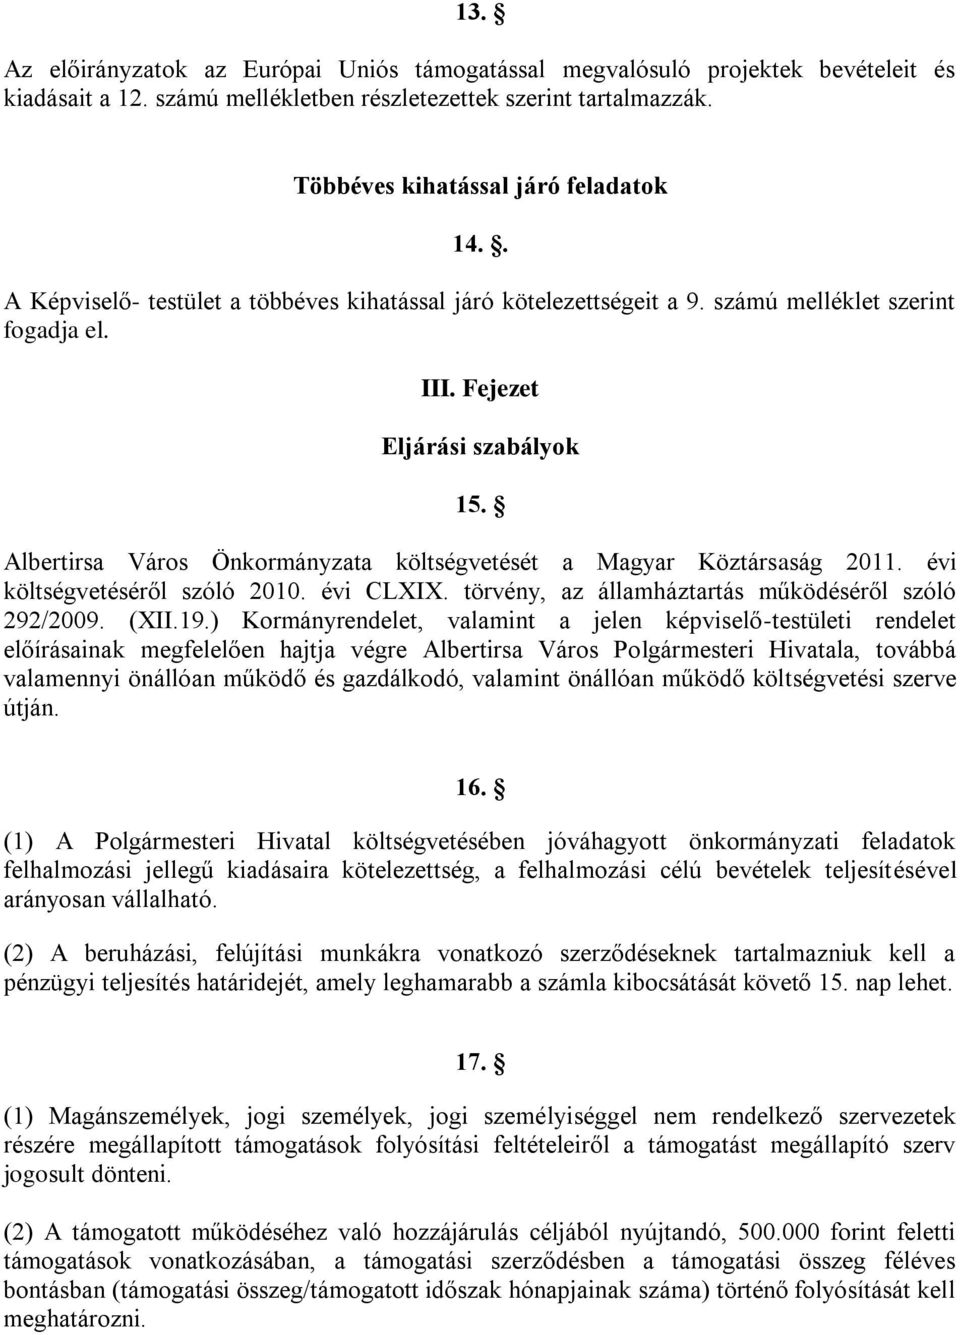 Albertirsa Város Önkormányzata költségvetését a Magyar Köztársaság 2011. évi költségvetéséről szóló 2010. évi CLXIX. törvény, az államháztartás működéséről szóló 292/2009. (XII.19.